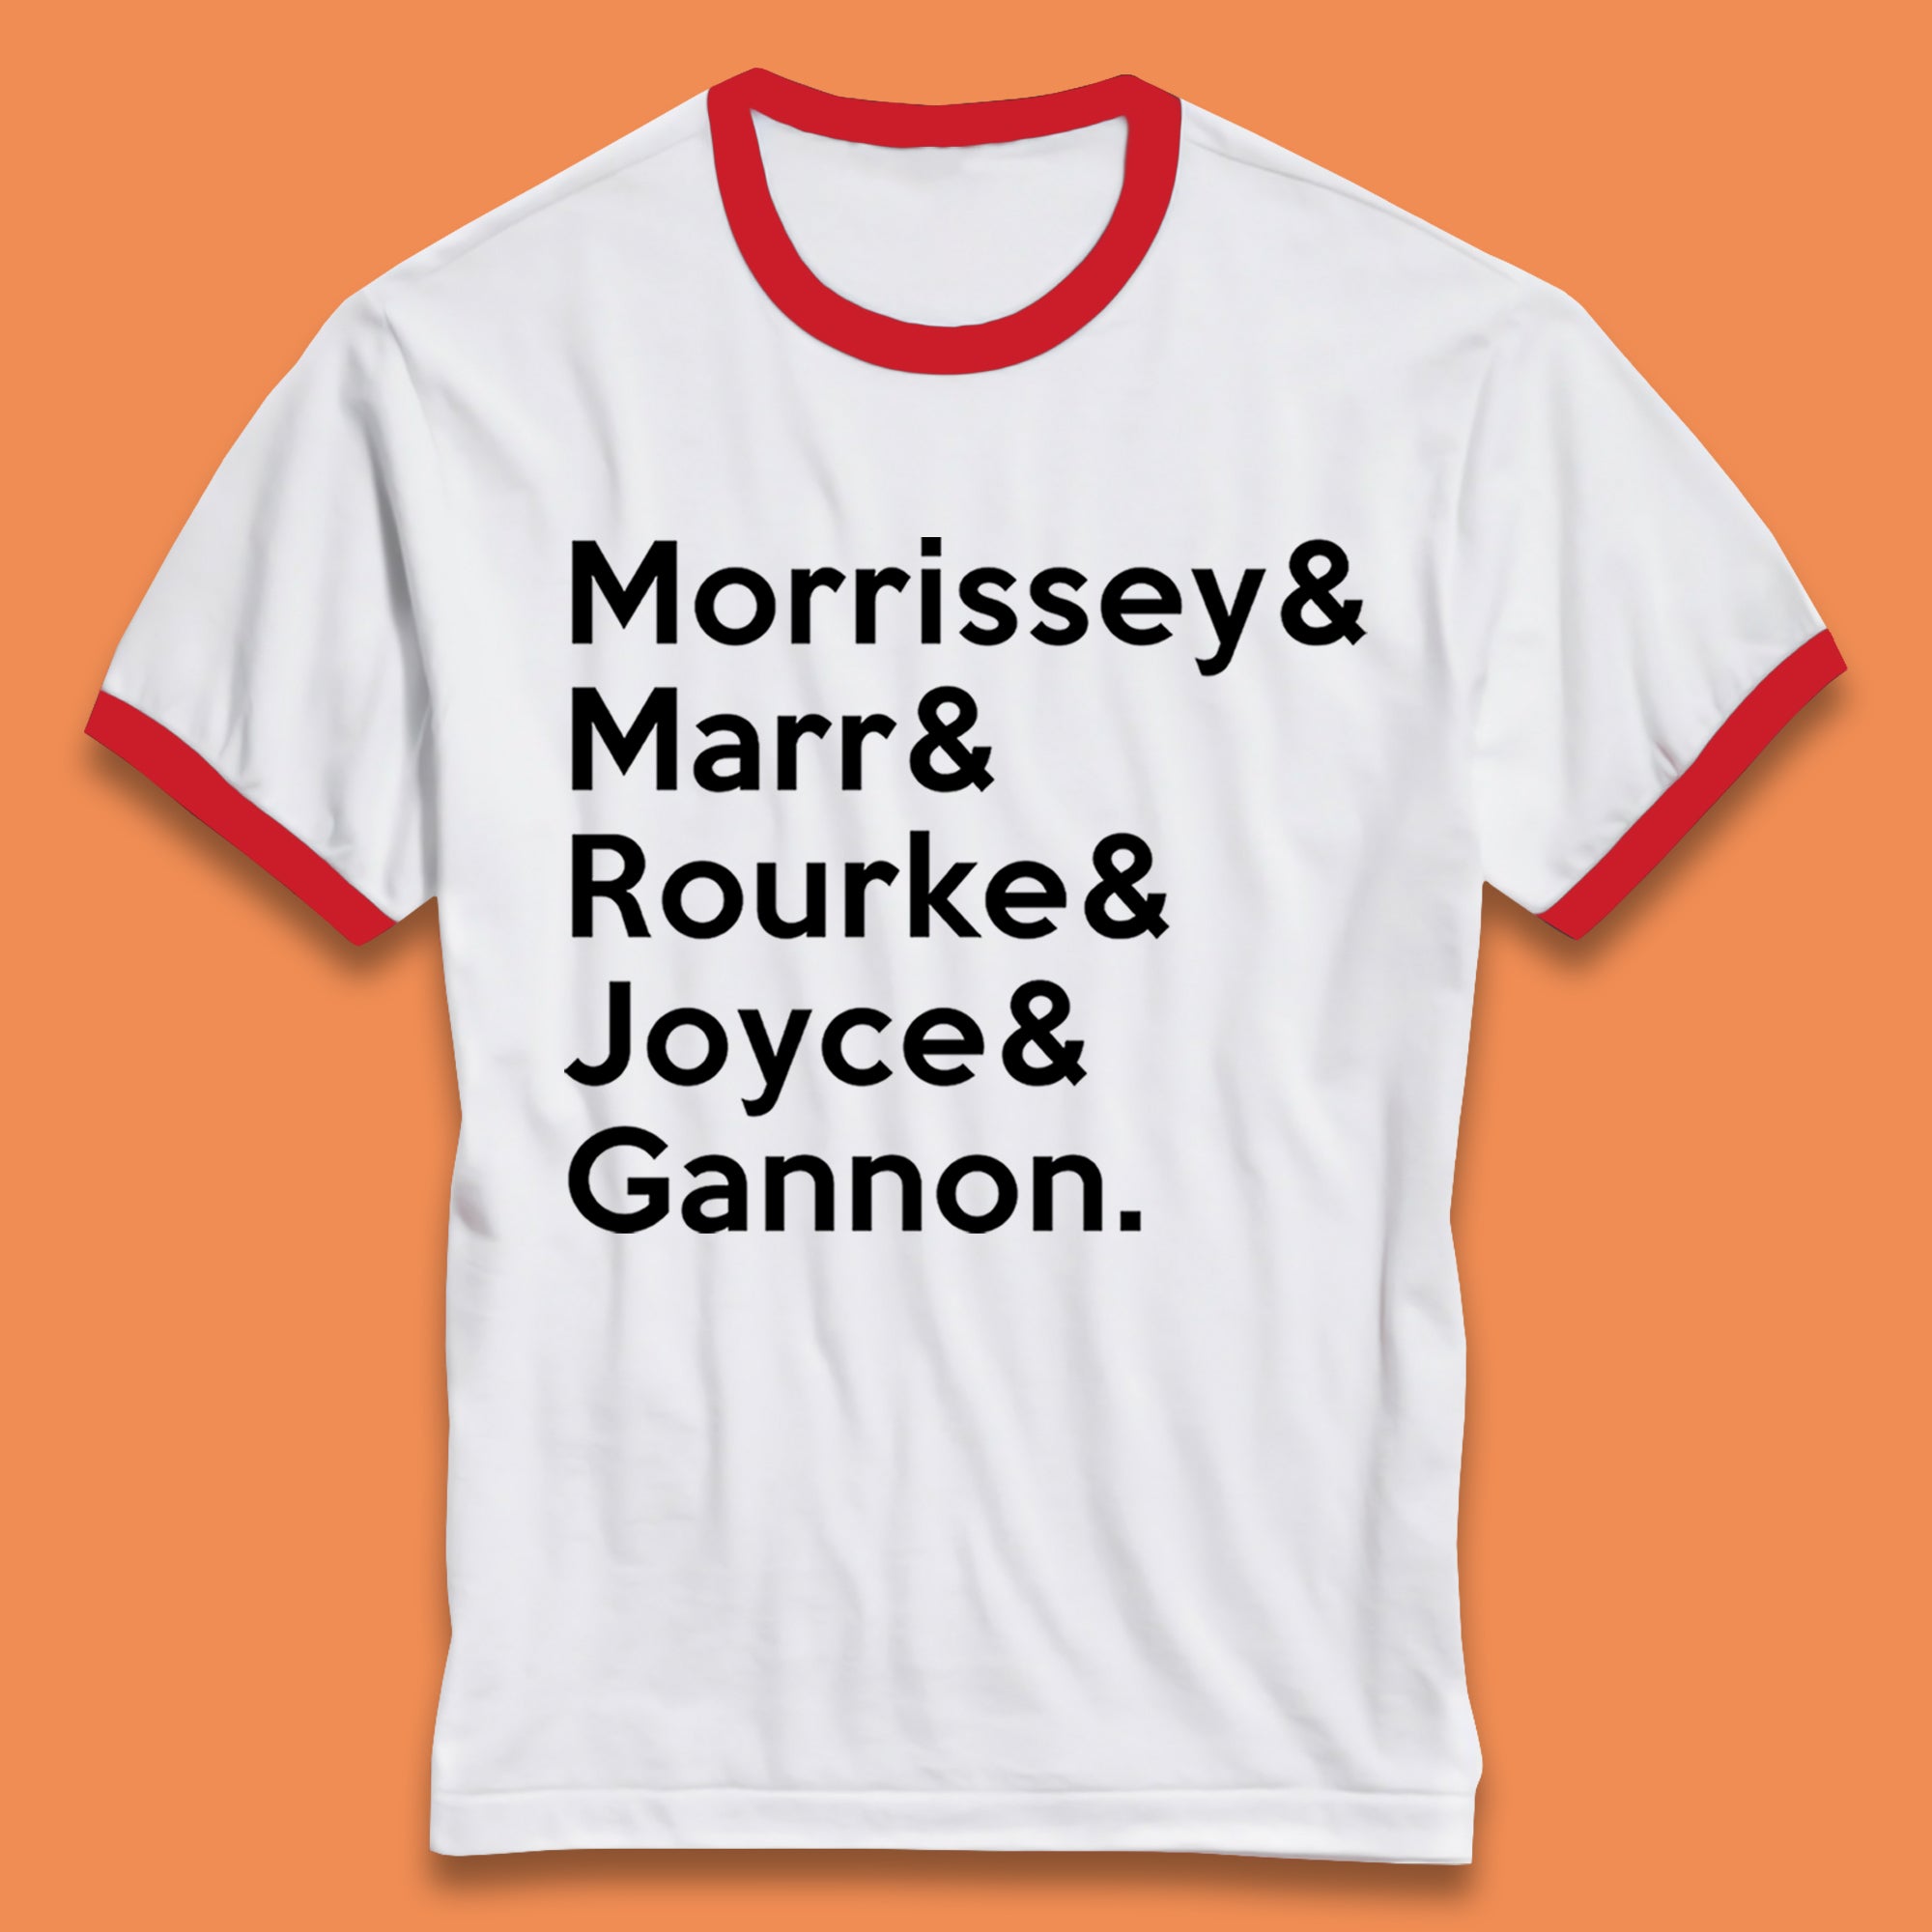 Morrissey &  & Rourke & Joyce & Gannon The Smiths Band Ringer T-Shirt